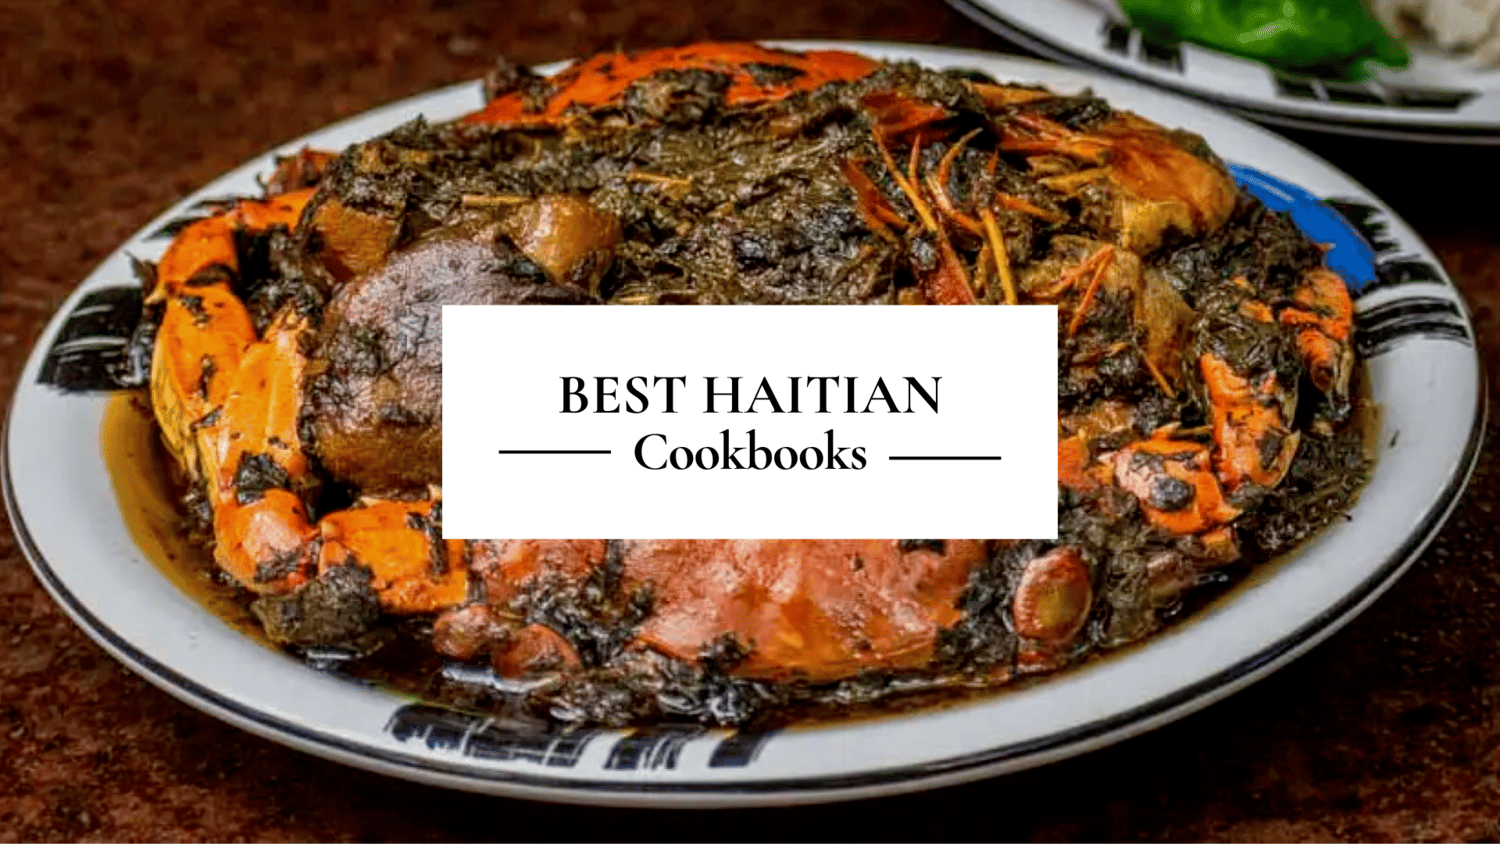 Best Haitian Cookbooks